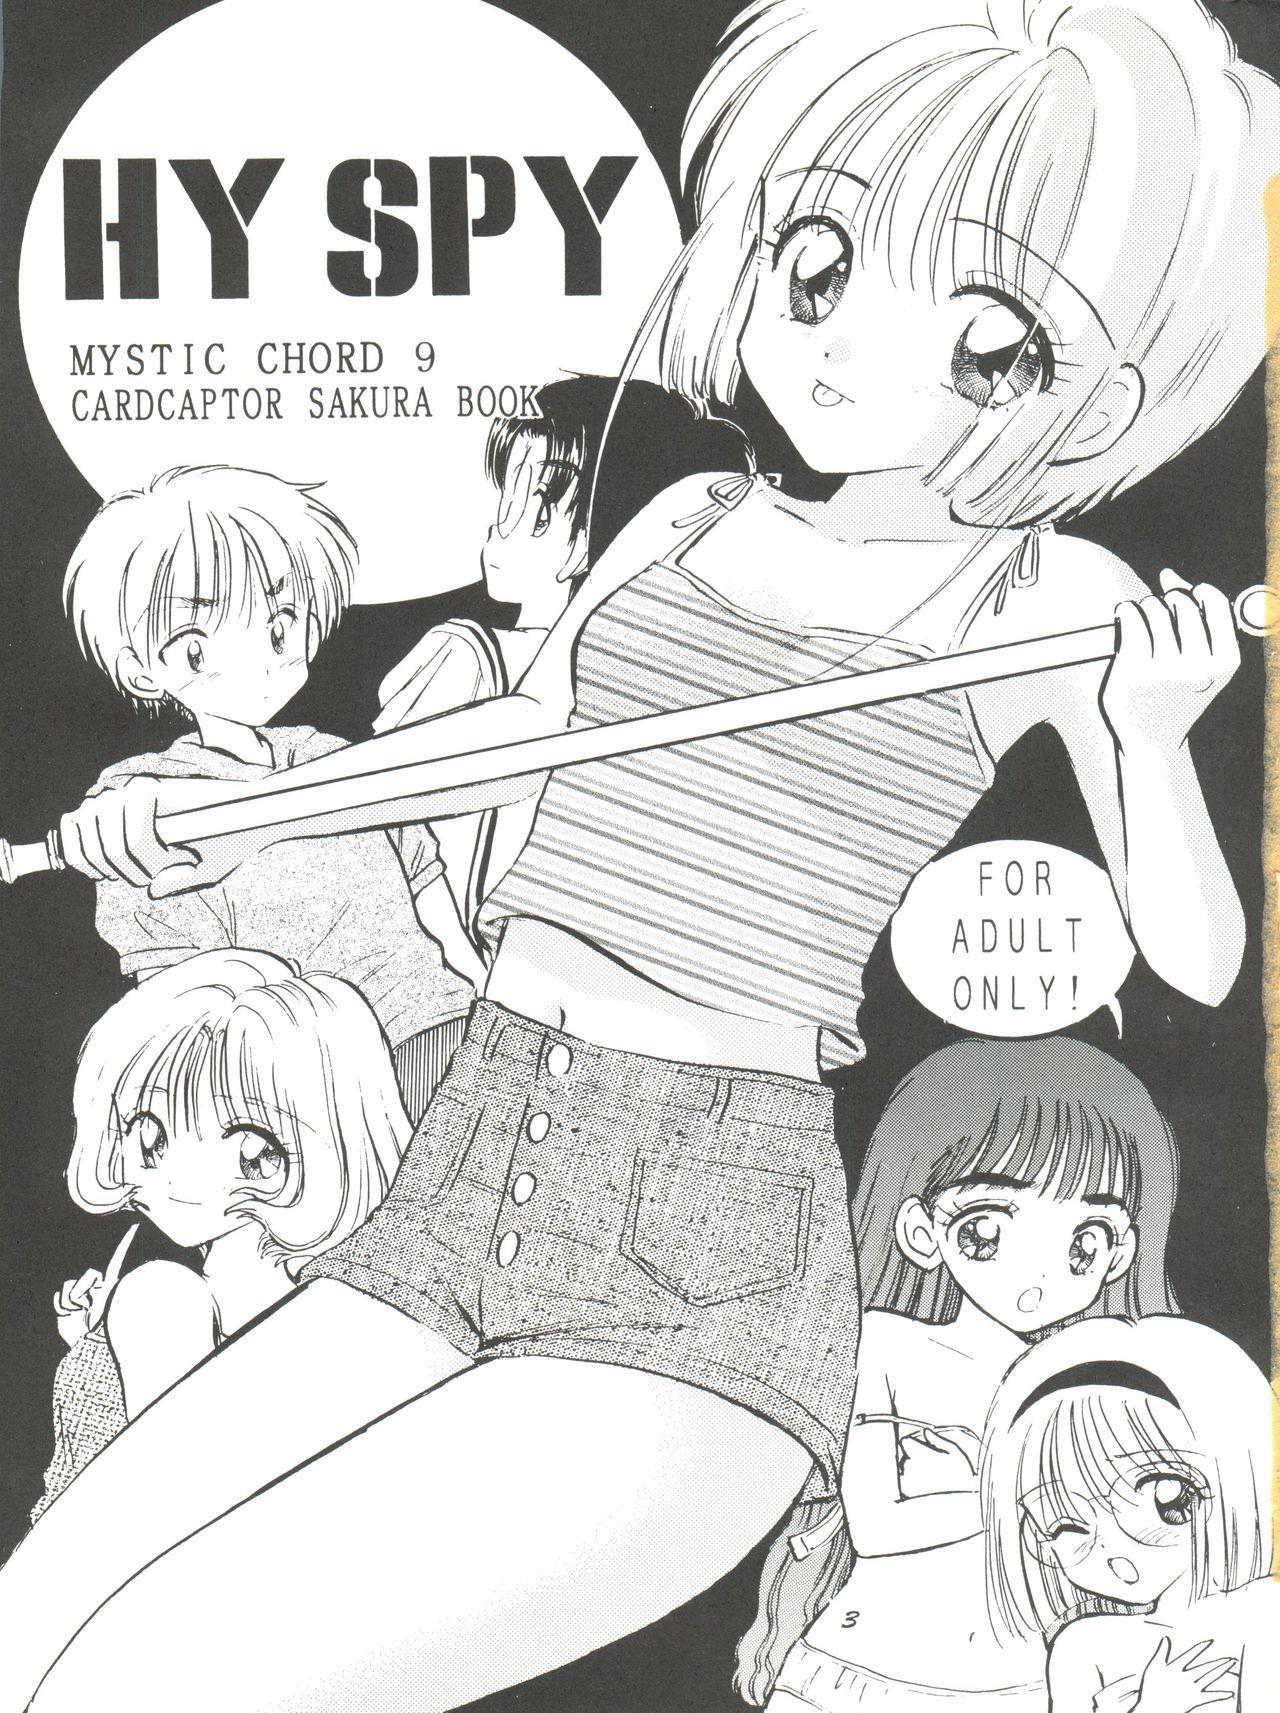 HY SPY 2